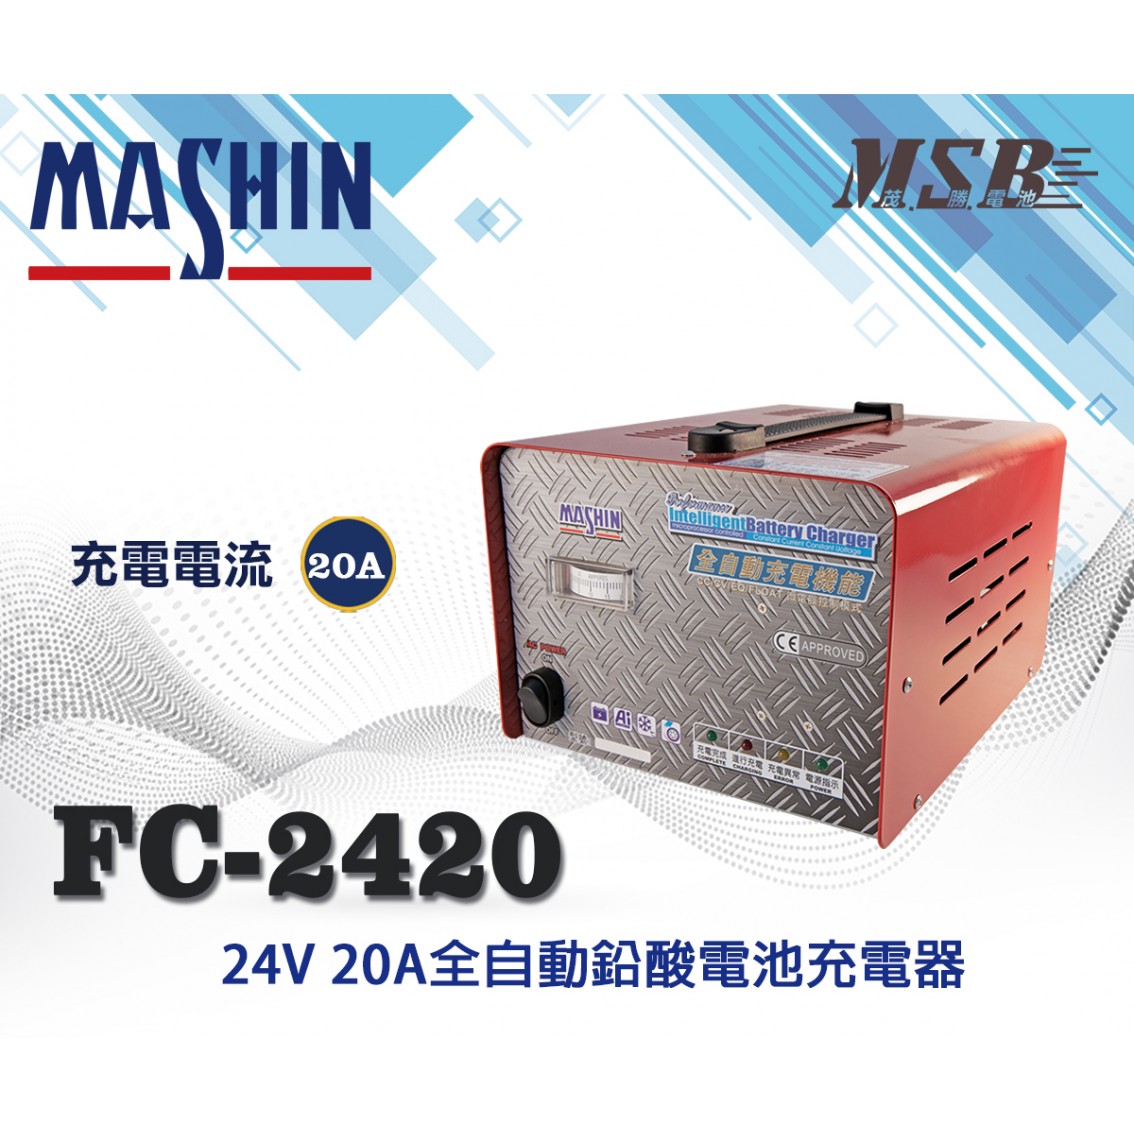 FC-2420